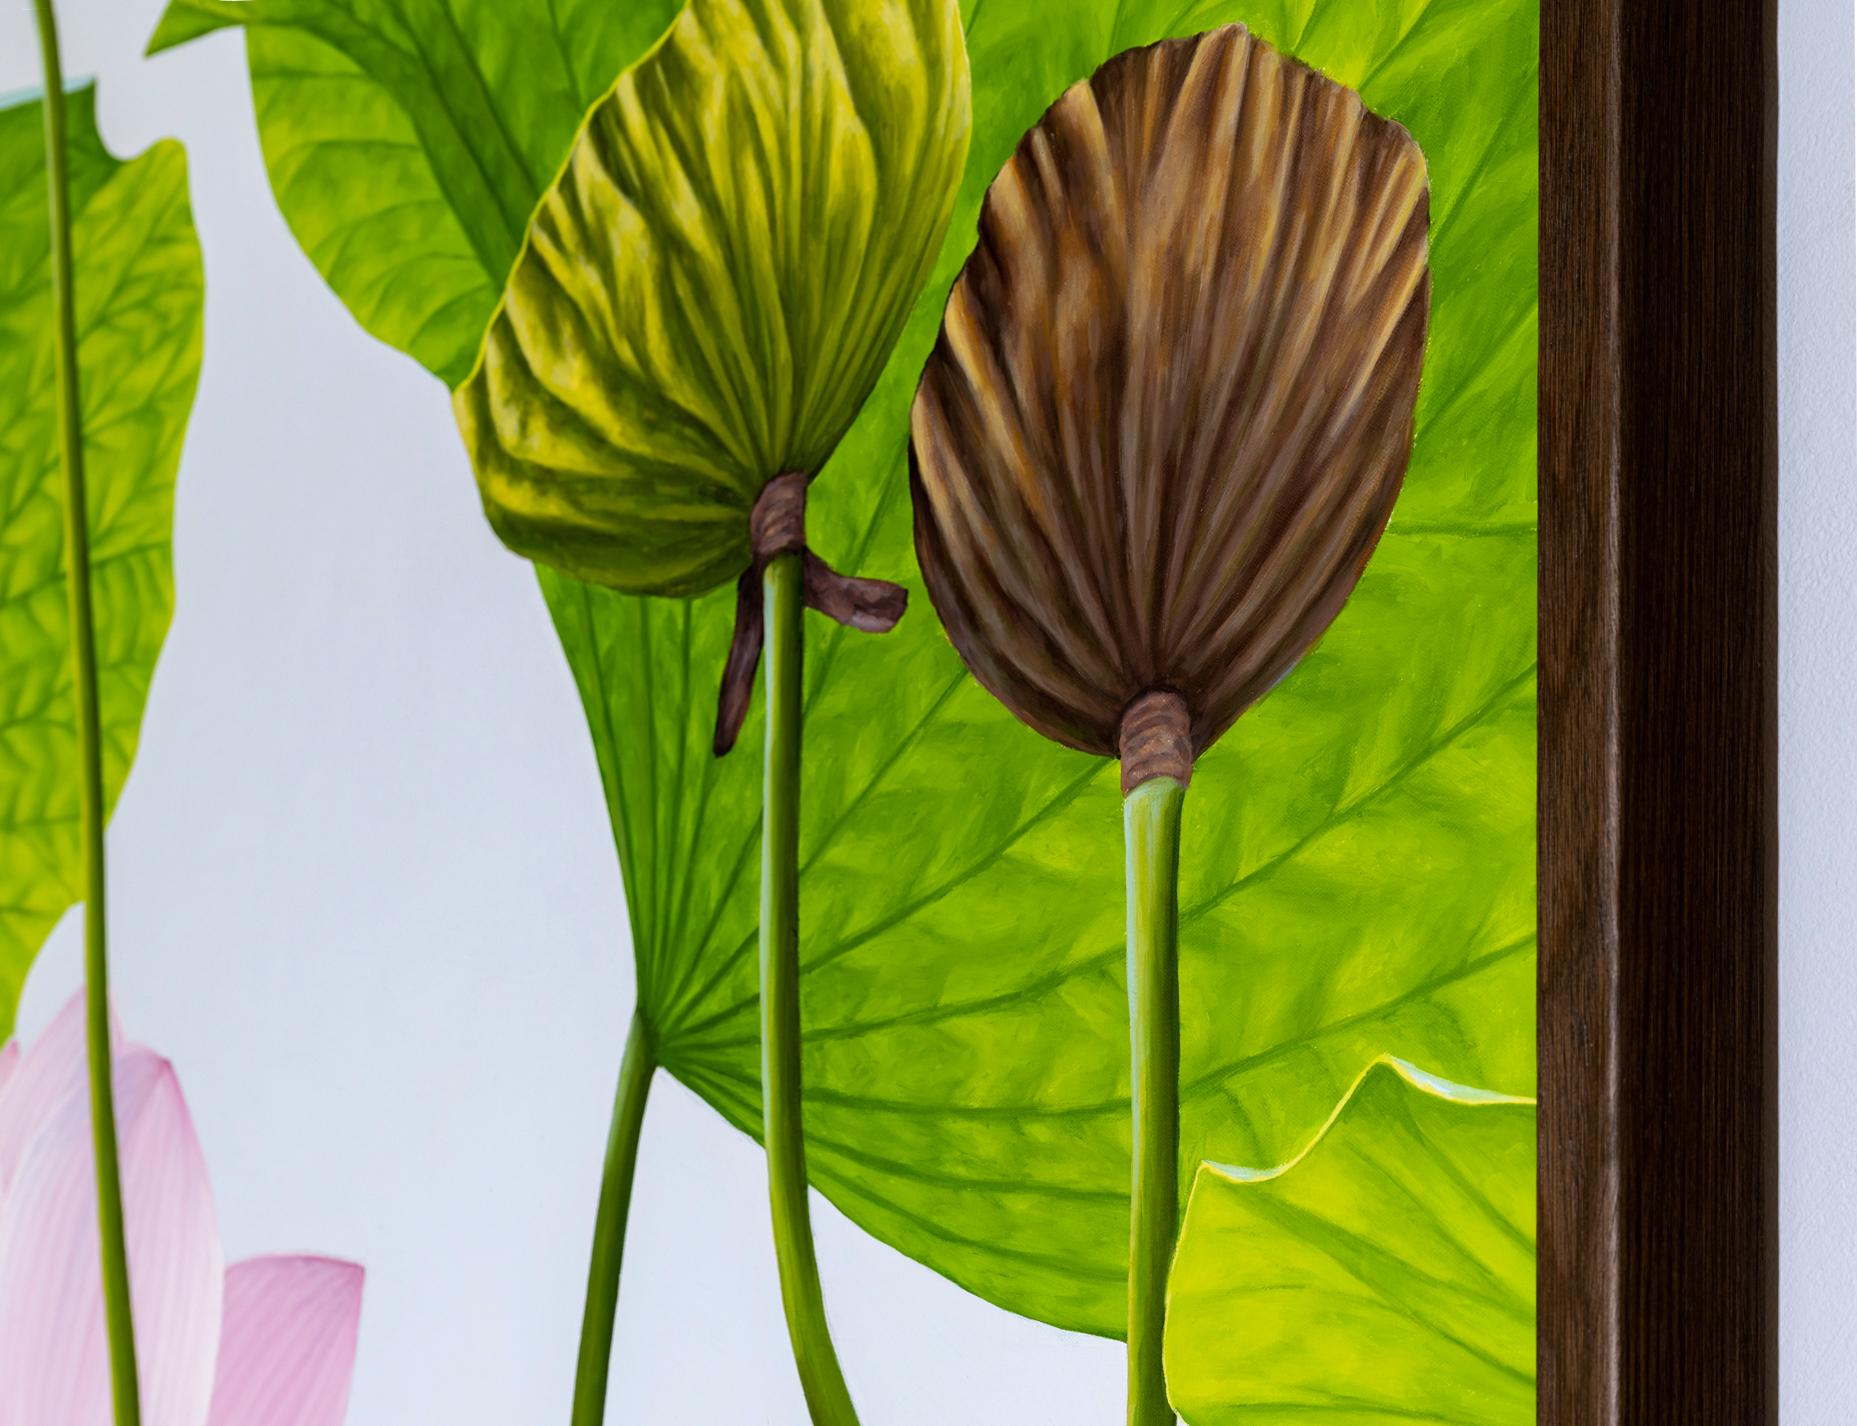 Fotorealistisches Stillleben auf Leinwand einer hellrosa Lotusblume mit braunen Lotusschoten und grünen Blütenblättern vor einem hellgrauen Hintergrund
